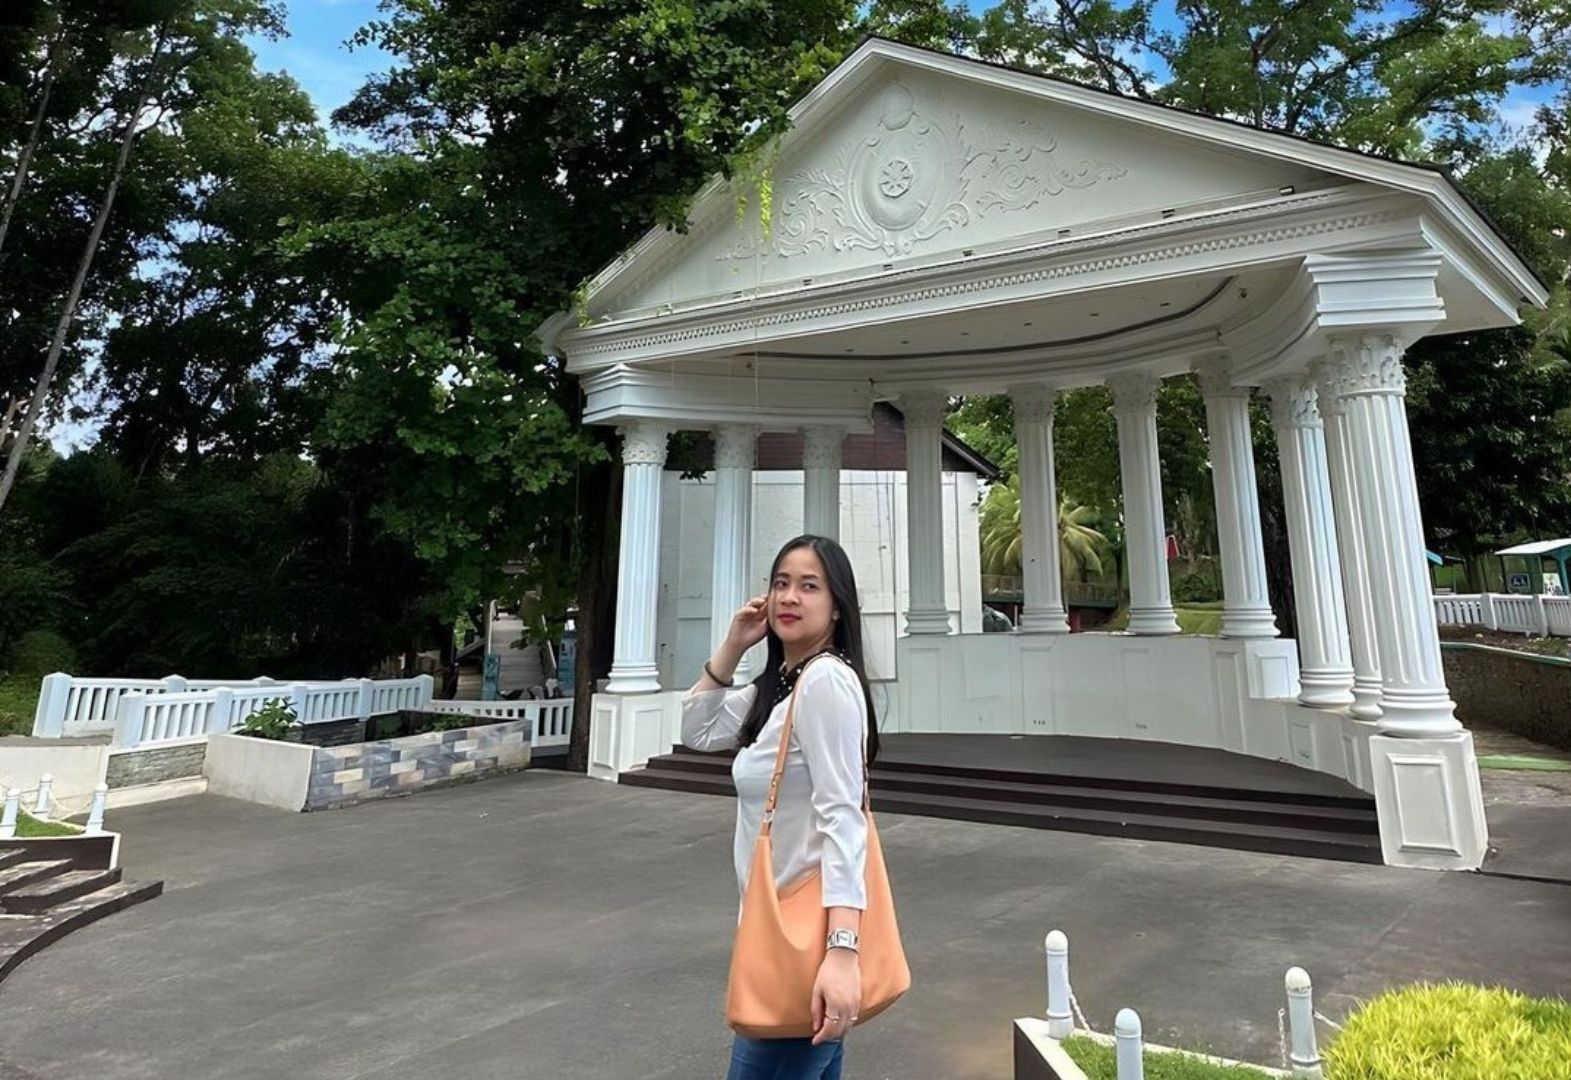 Spot foto yang instagramable di Taman Wisata Karang Resik, salah satu wisata hits di Kota Tasikmalaya. / instagram / @winalapar